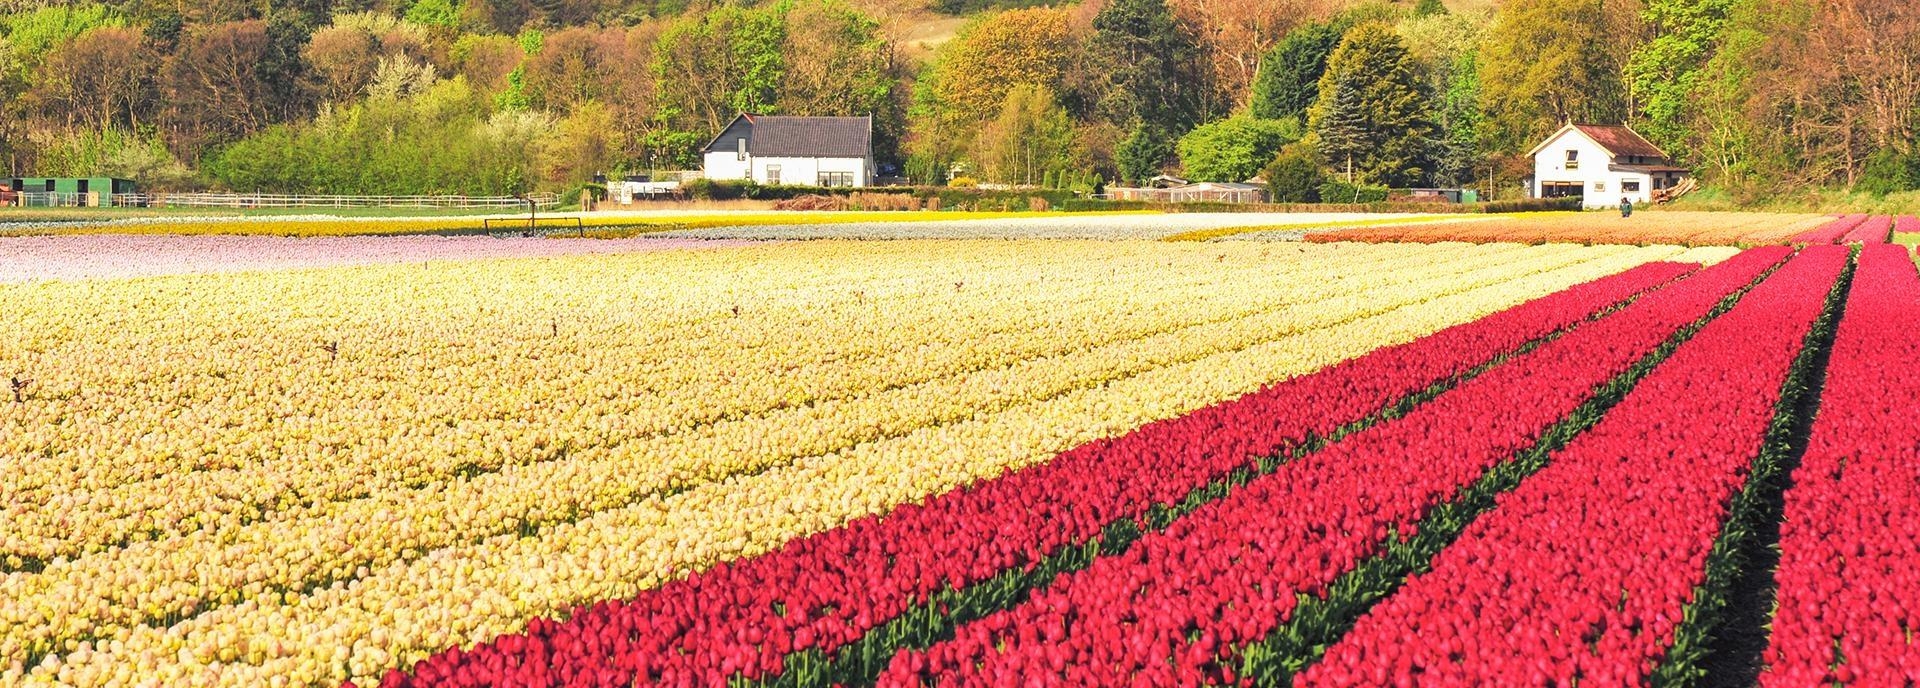 Bild von gelben und roten Blumenzwiebelfeldern in Egmond